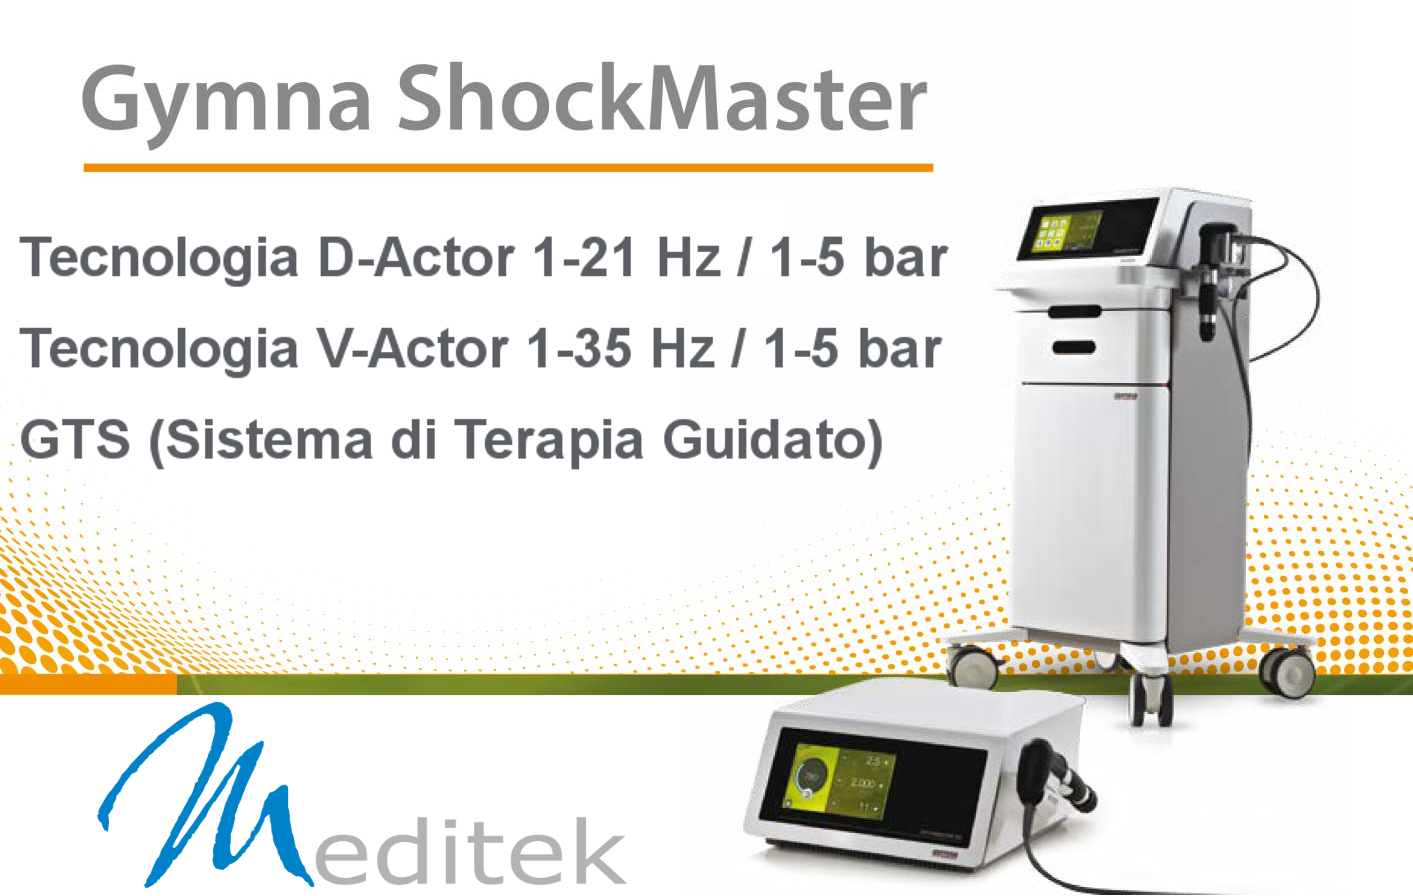 Gymna ShockMaster 500 Onde d'Urto